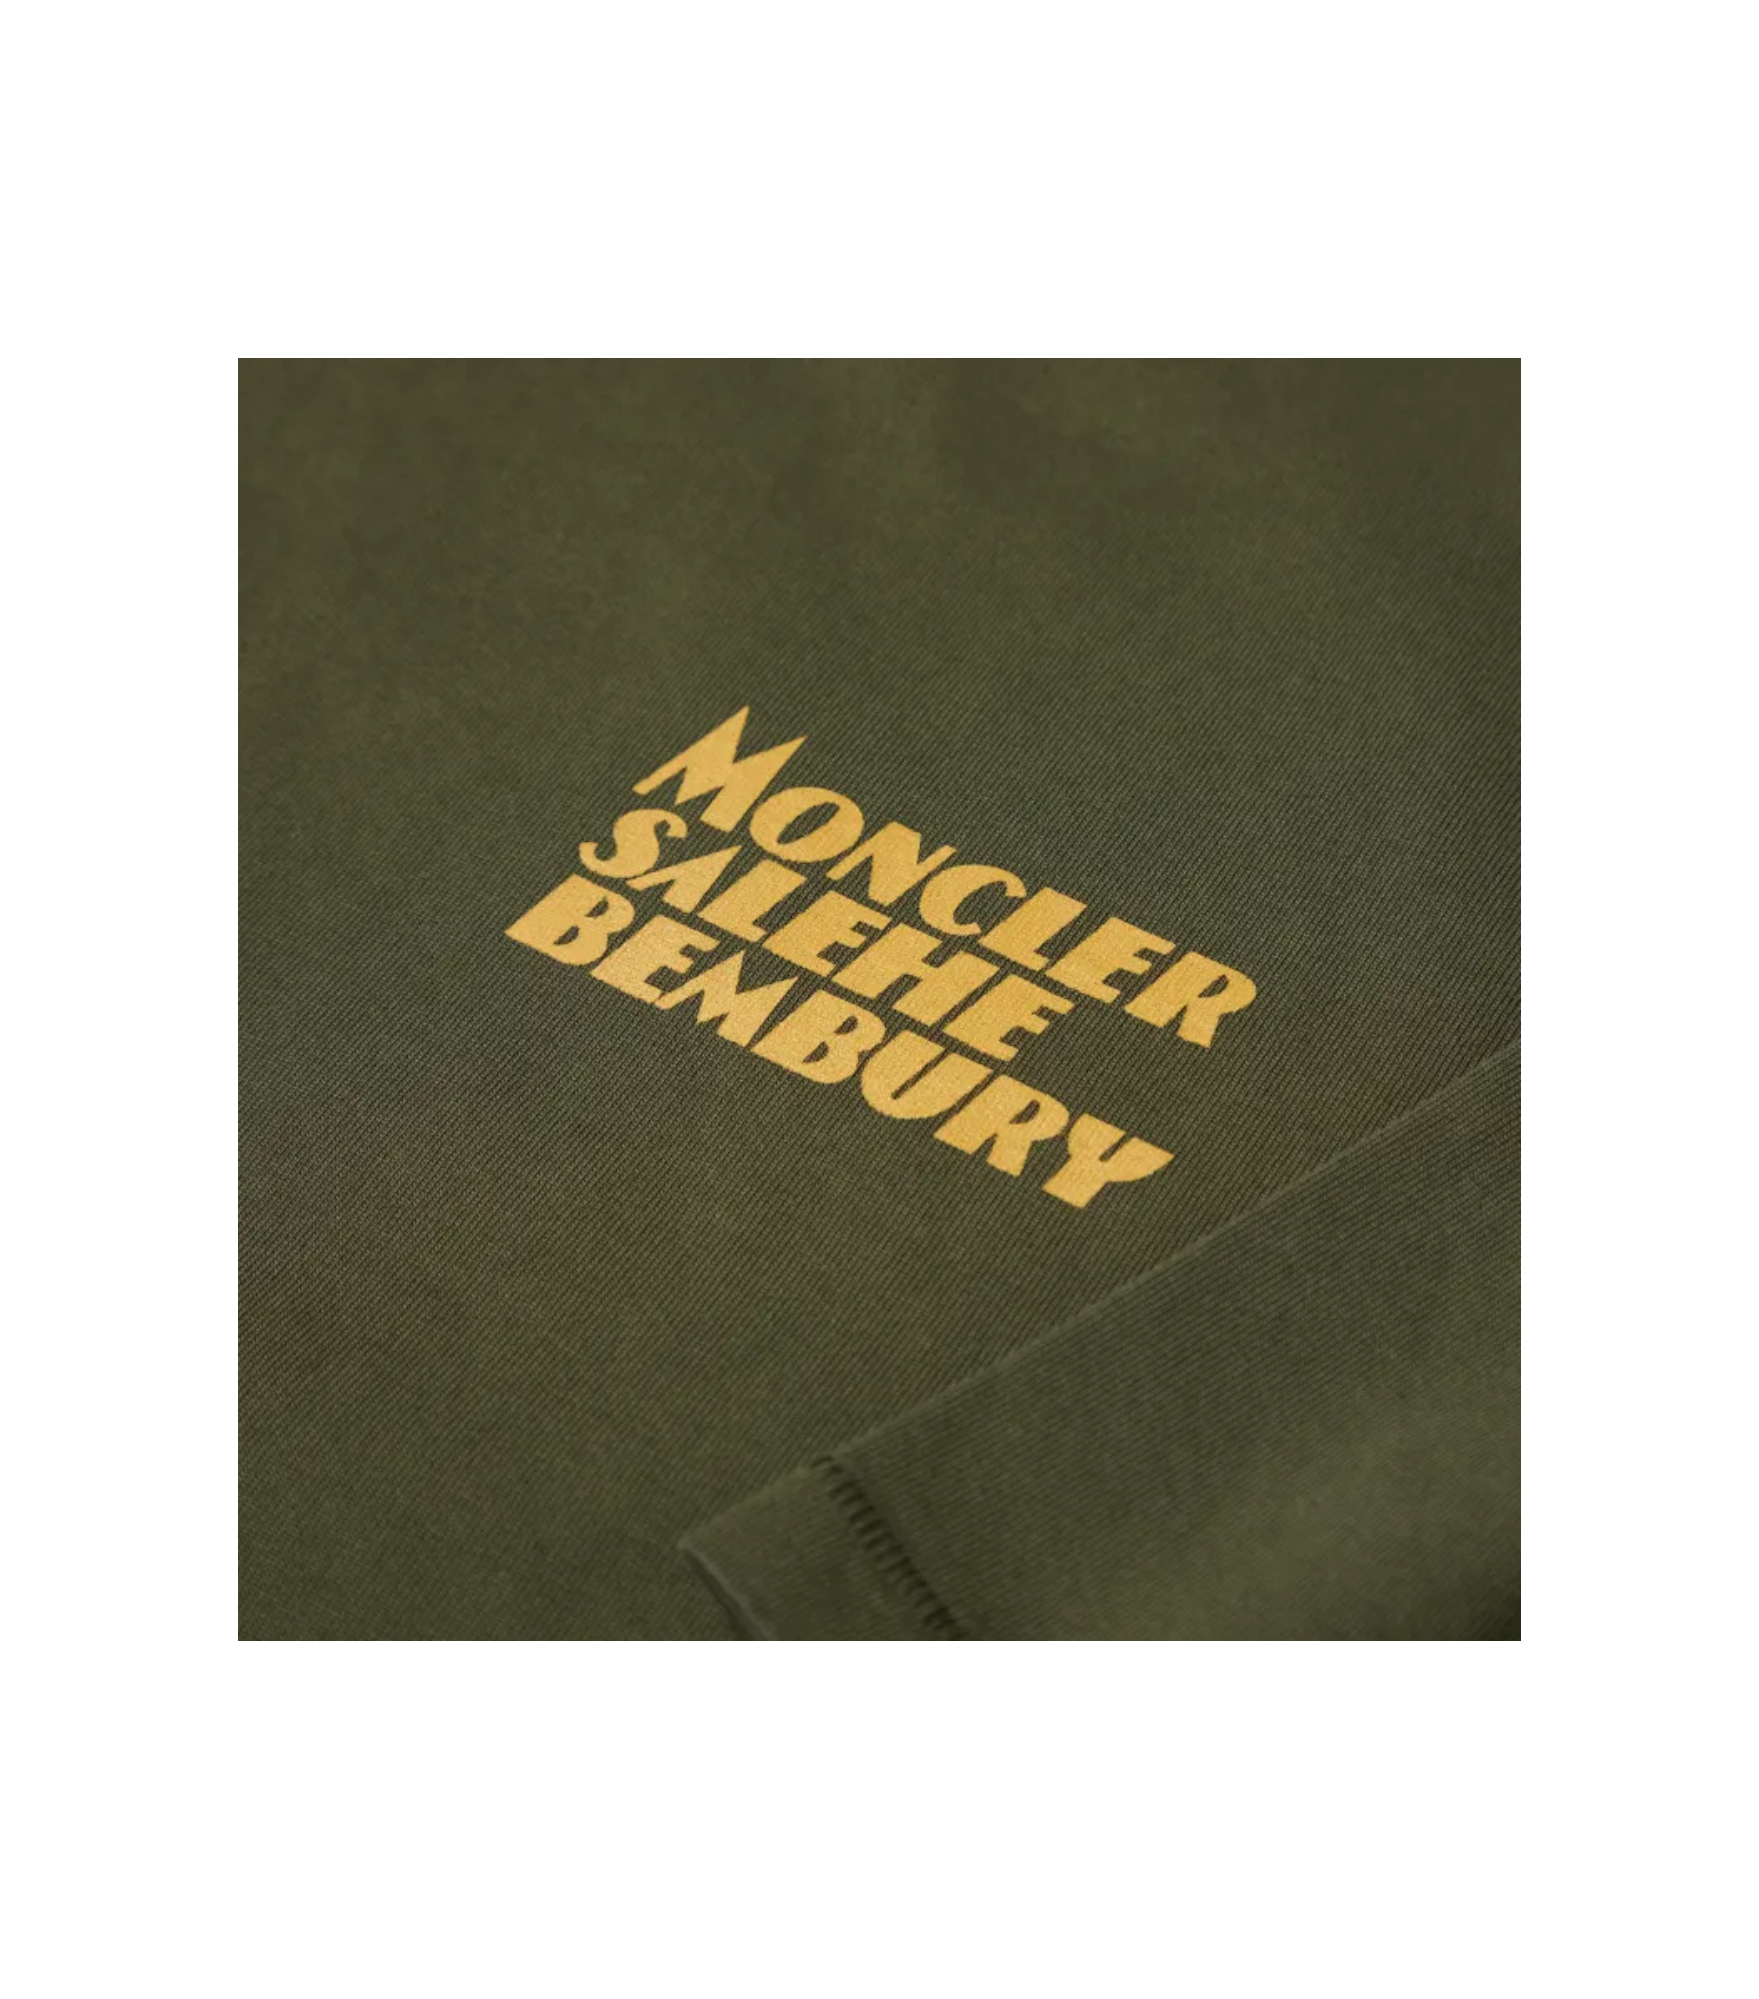 Moncler x Salehe Bembury Logo T-Shirt